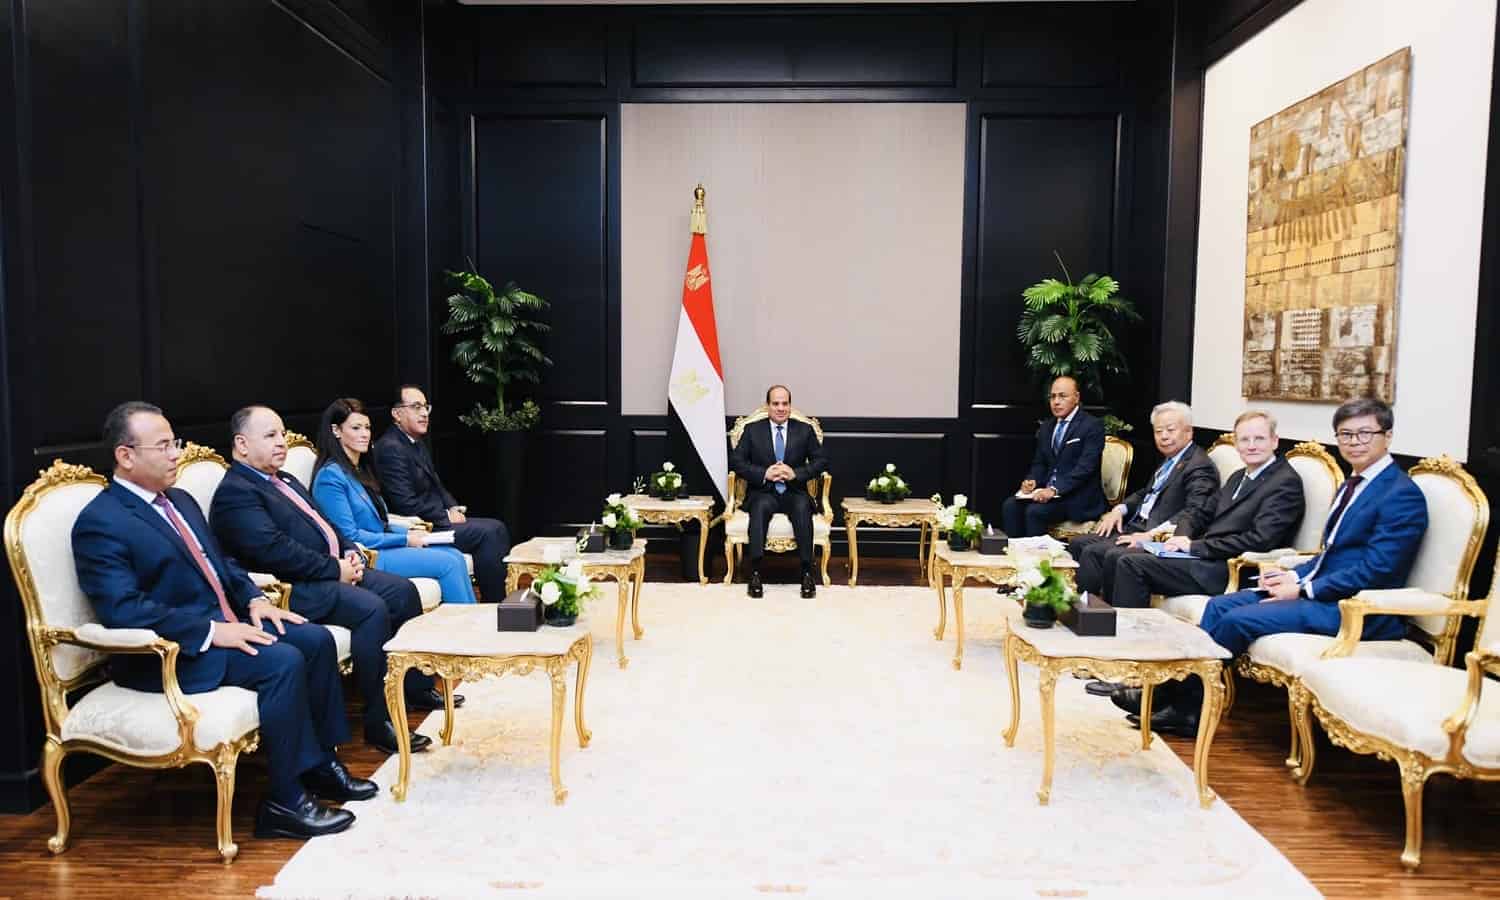 السيسي يتطلع لتعاون لبنك الآسيوي للاستثمار في البنية التحتية مع مصر في مجالات النقل والطاقة النظيفة